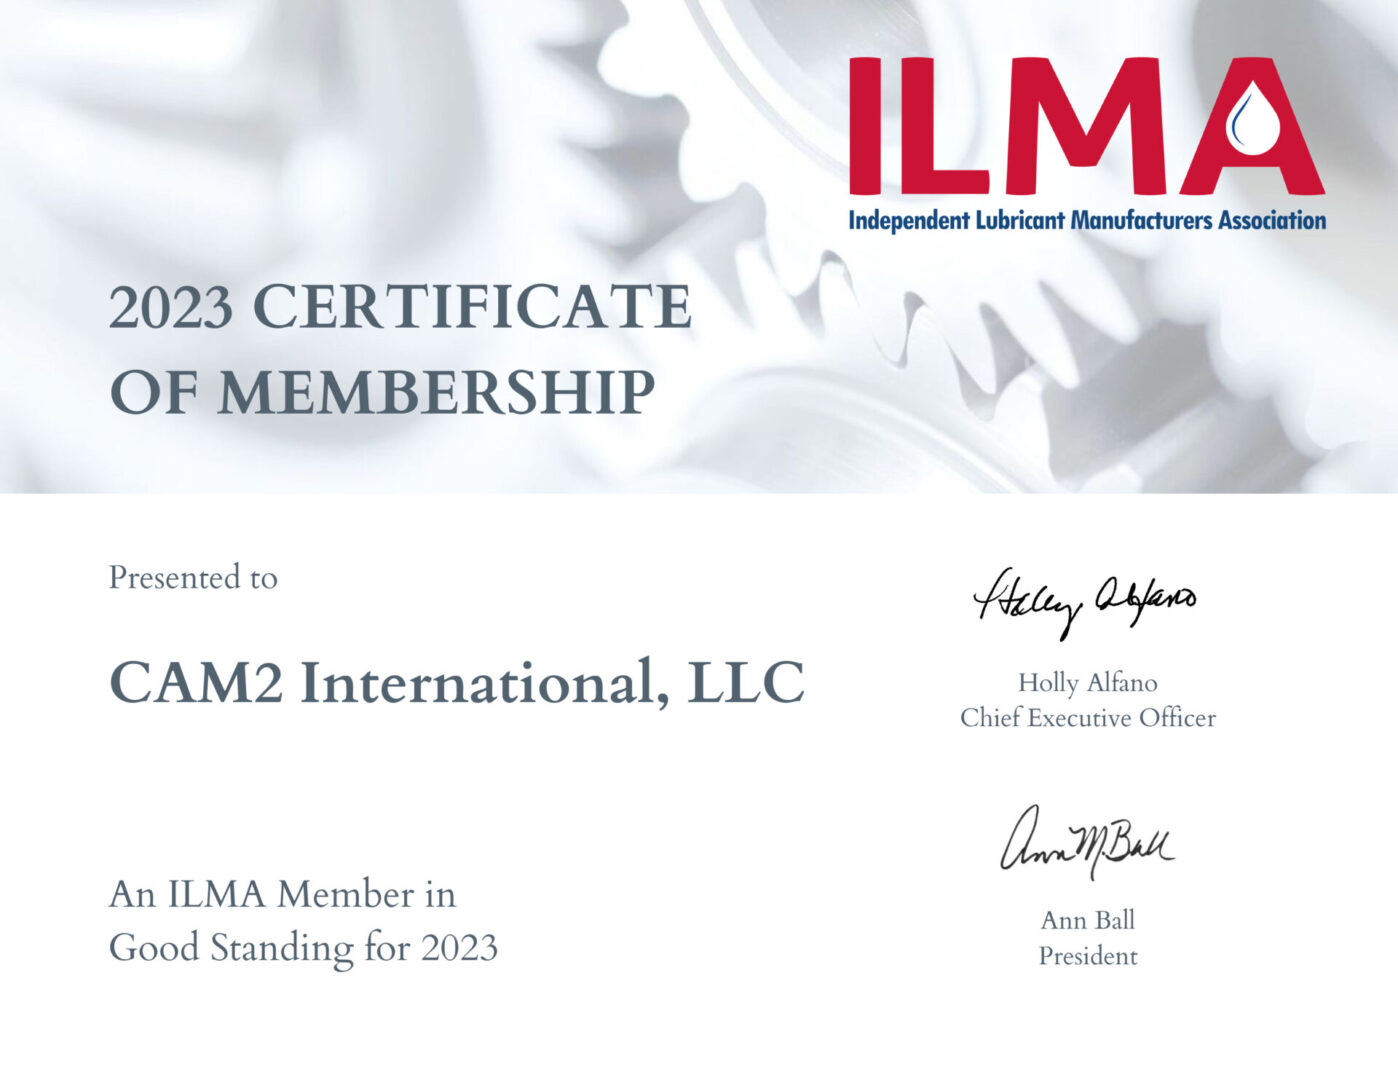 CAM2 International, LLC 2023 CERTIFICATE OF MEMBERSHIP